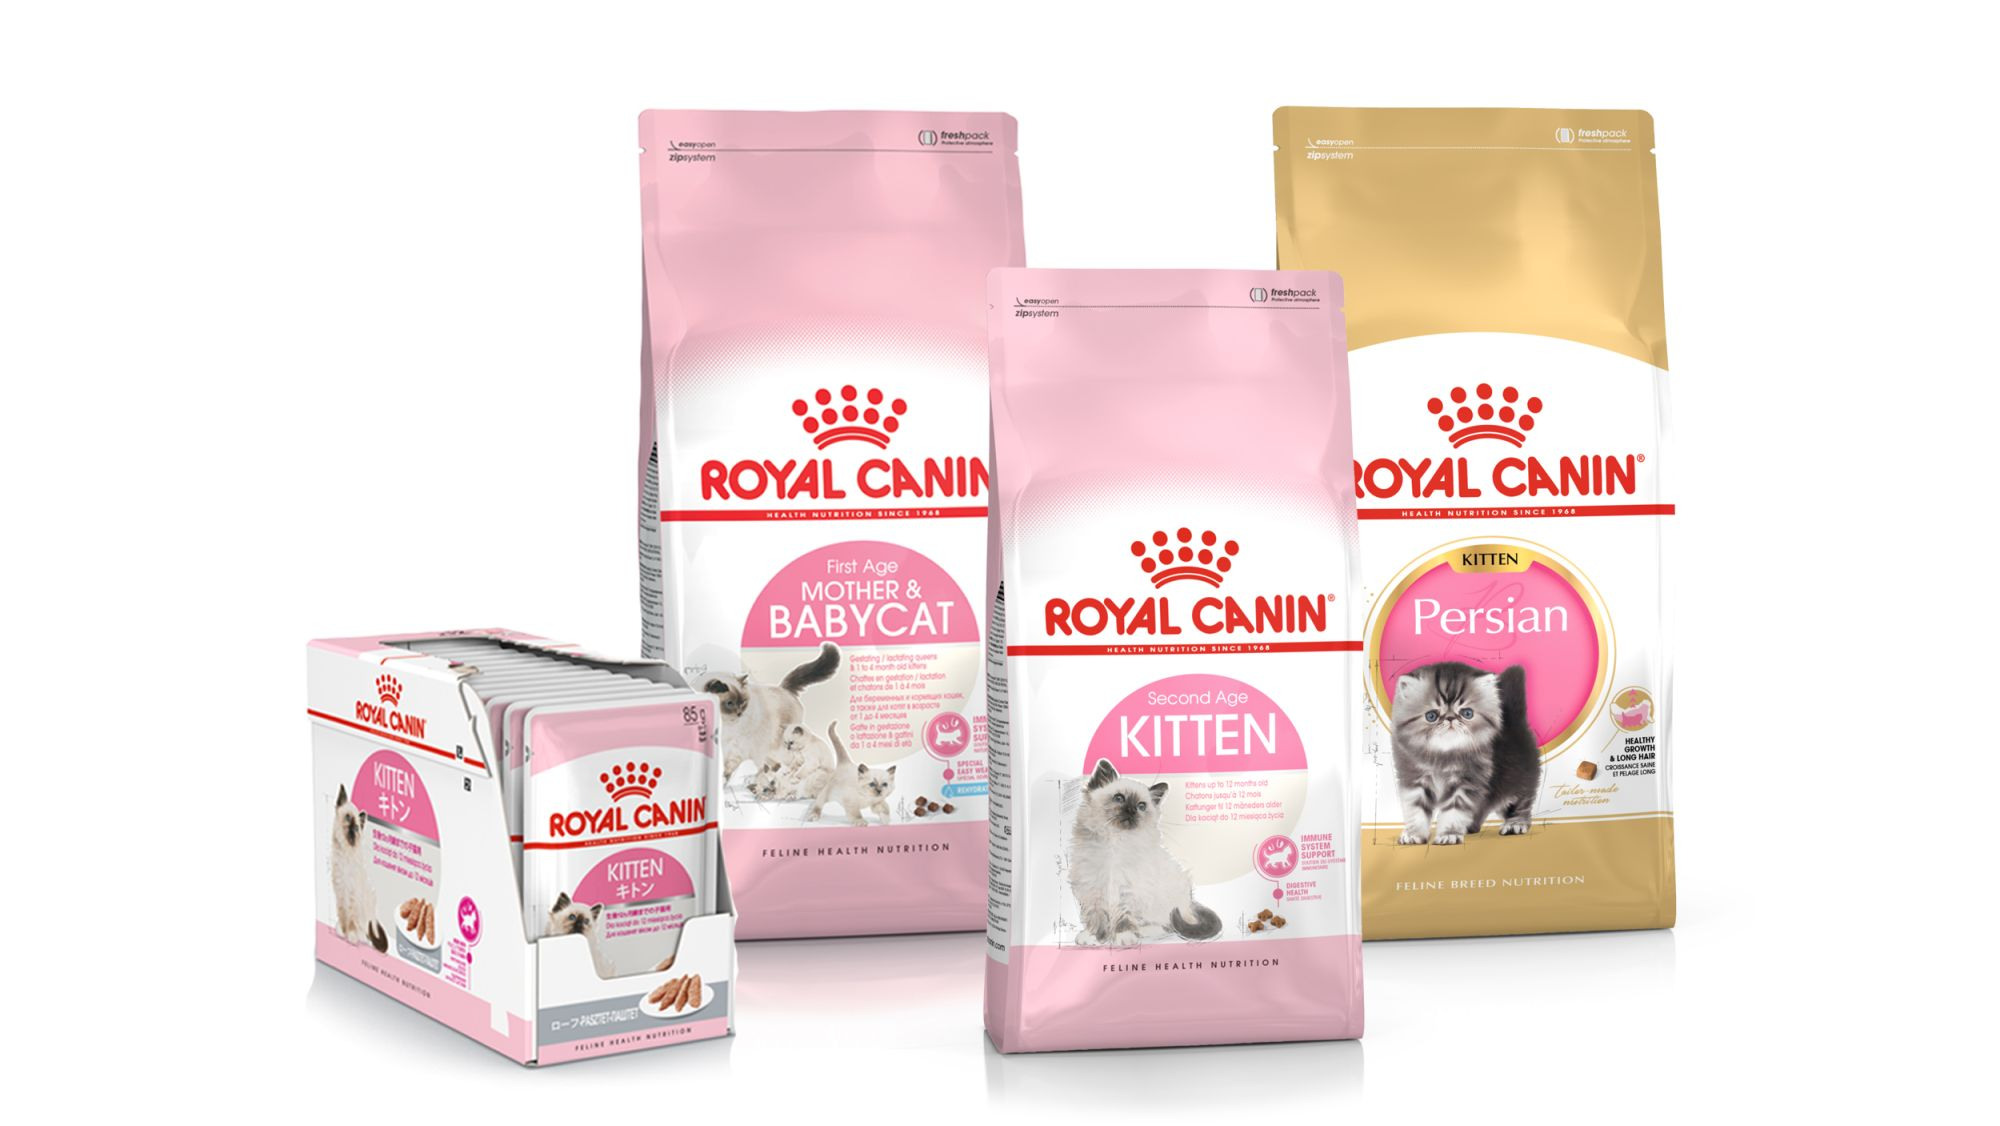 Kitten product range composition